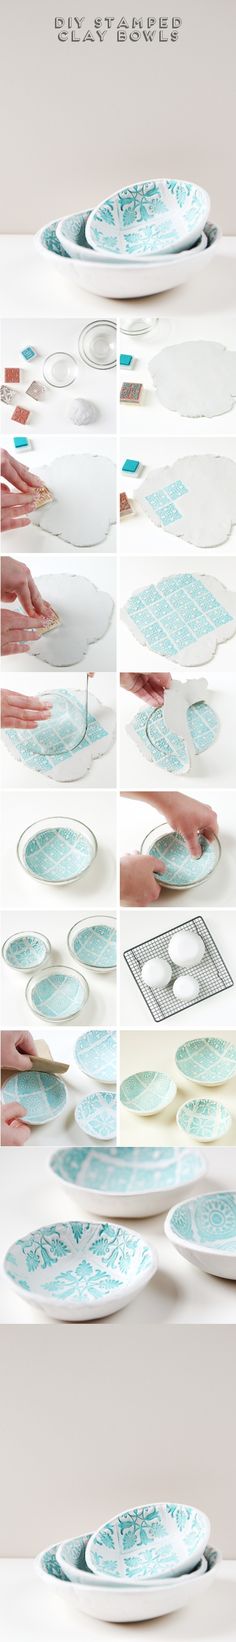 Fabrica tus propios bowls de arcilla - Muy Ingenioso